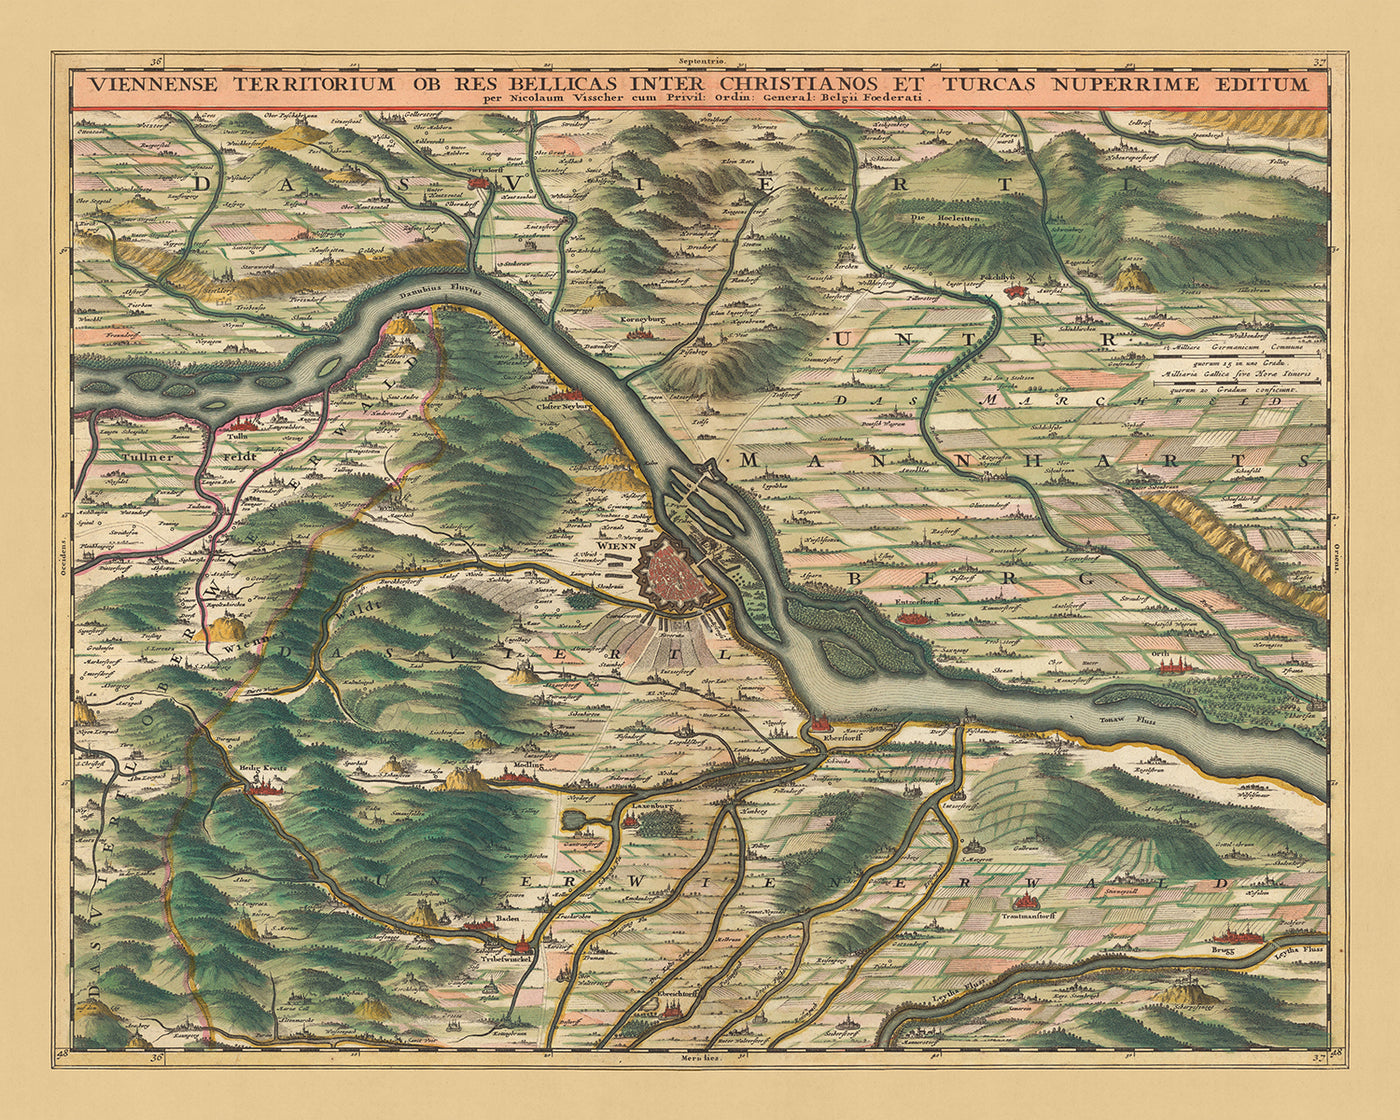 Old Map of Territory around Vienna: Visscher, 1690: Tulln, Schwechat, Klosterneuburg, Baden bei Vien, Lainzer Tiergarten